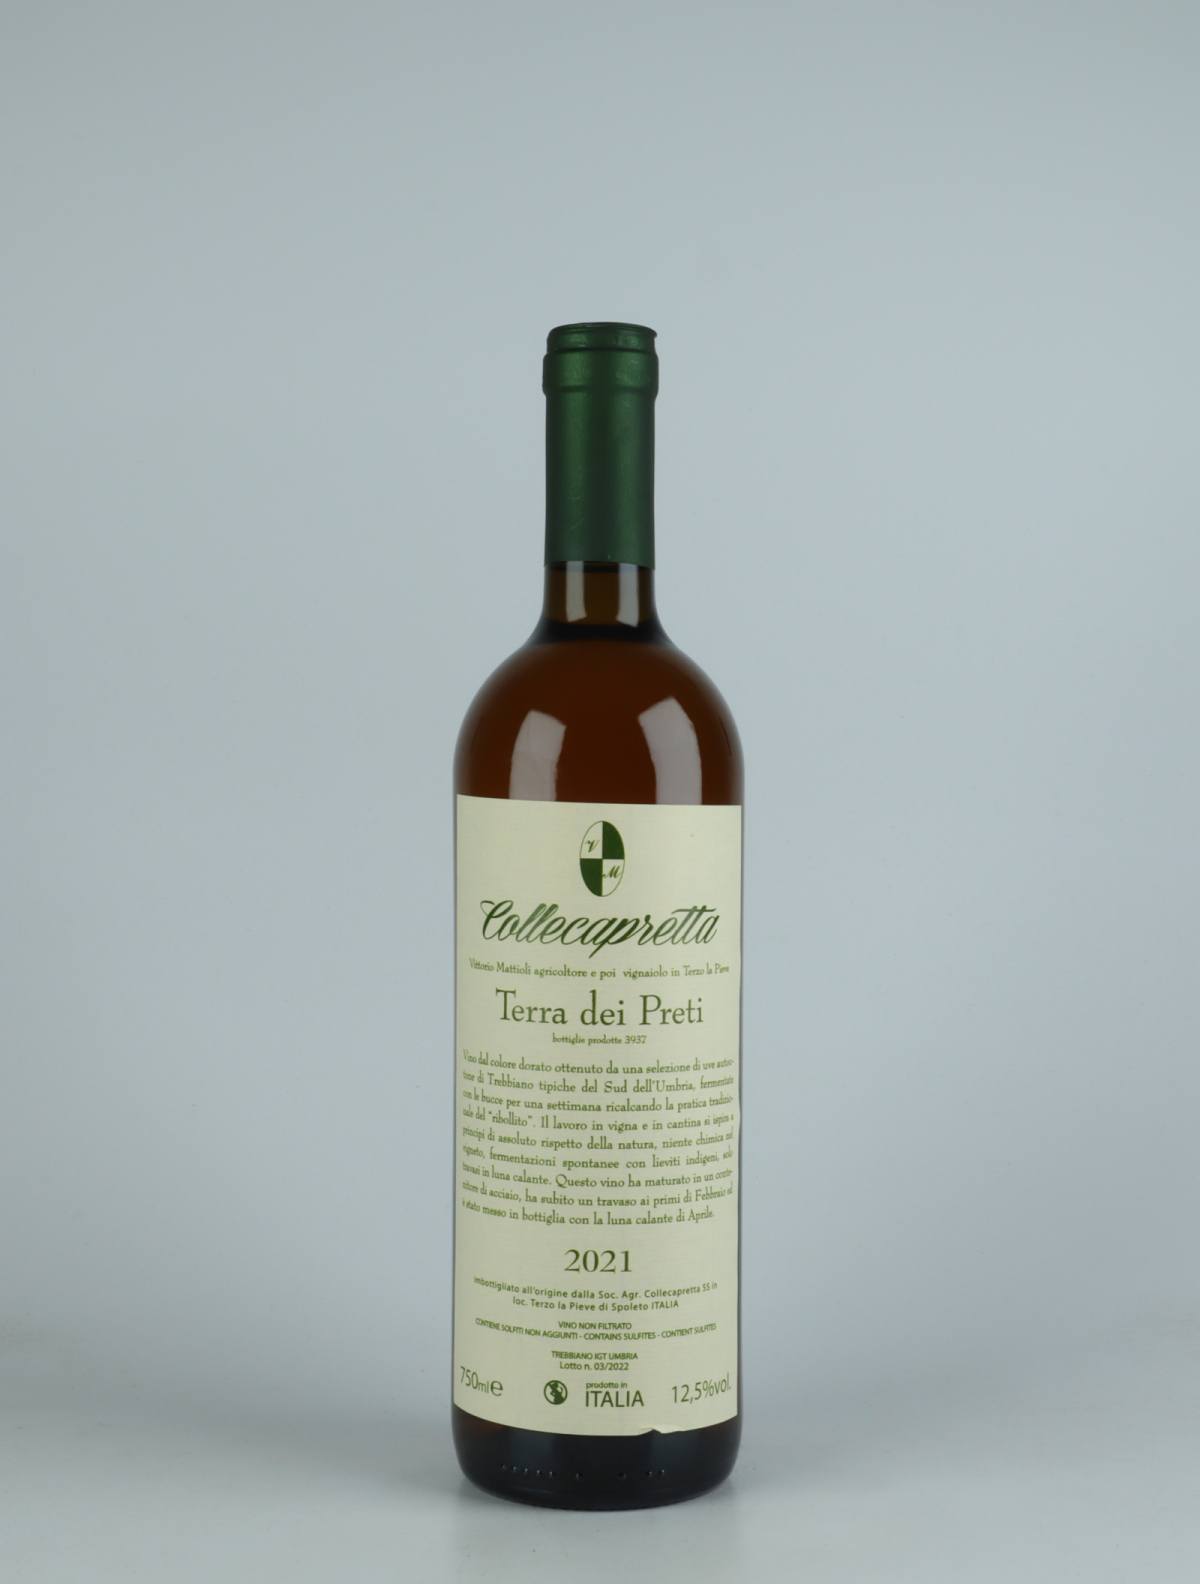 A bottle 2021 Terra dei Preti Orange wine from Collecapretta, Umbria in Italy